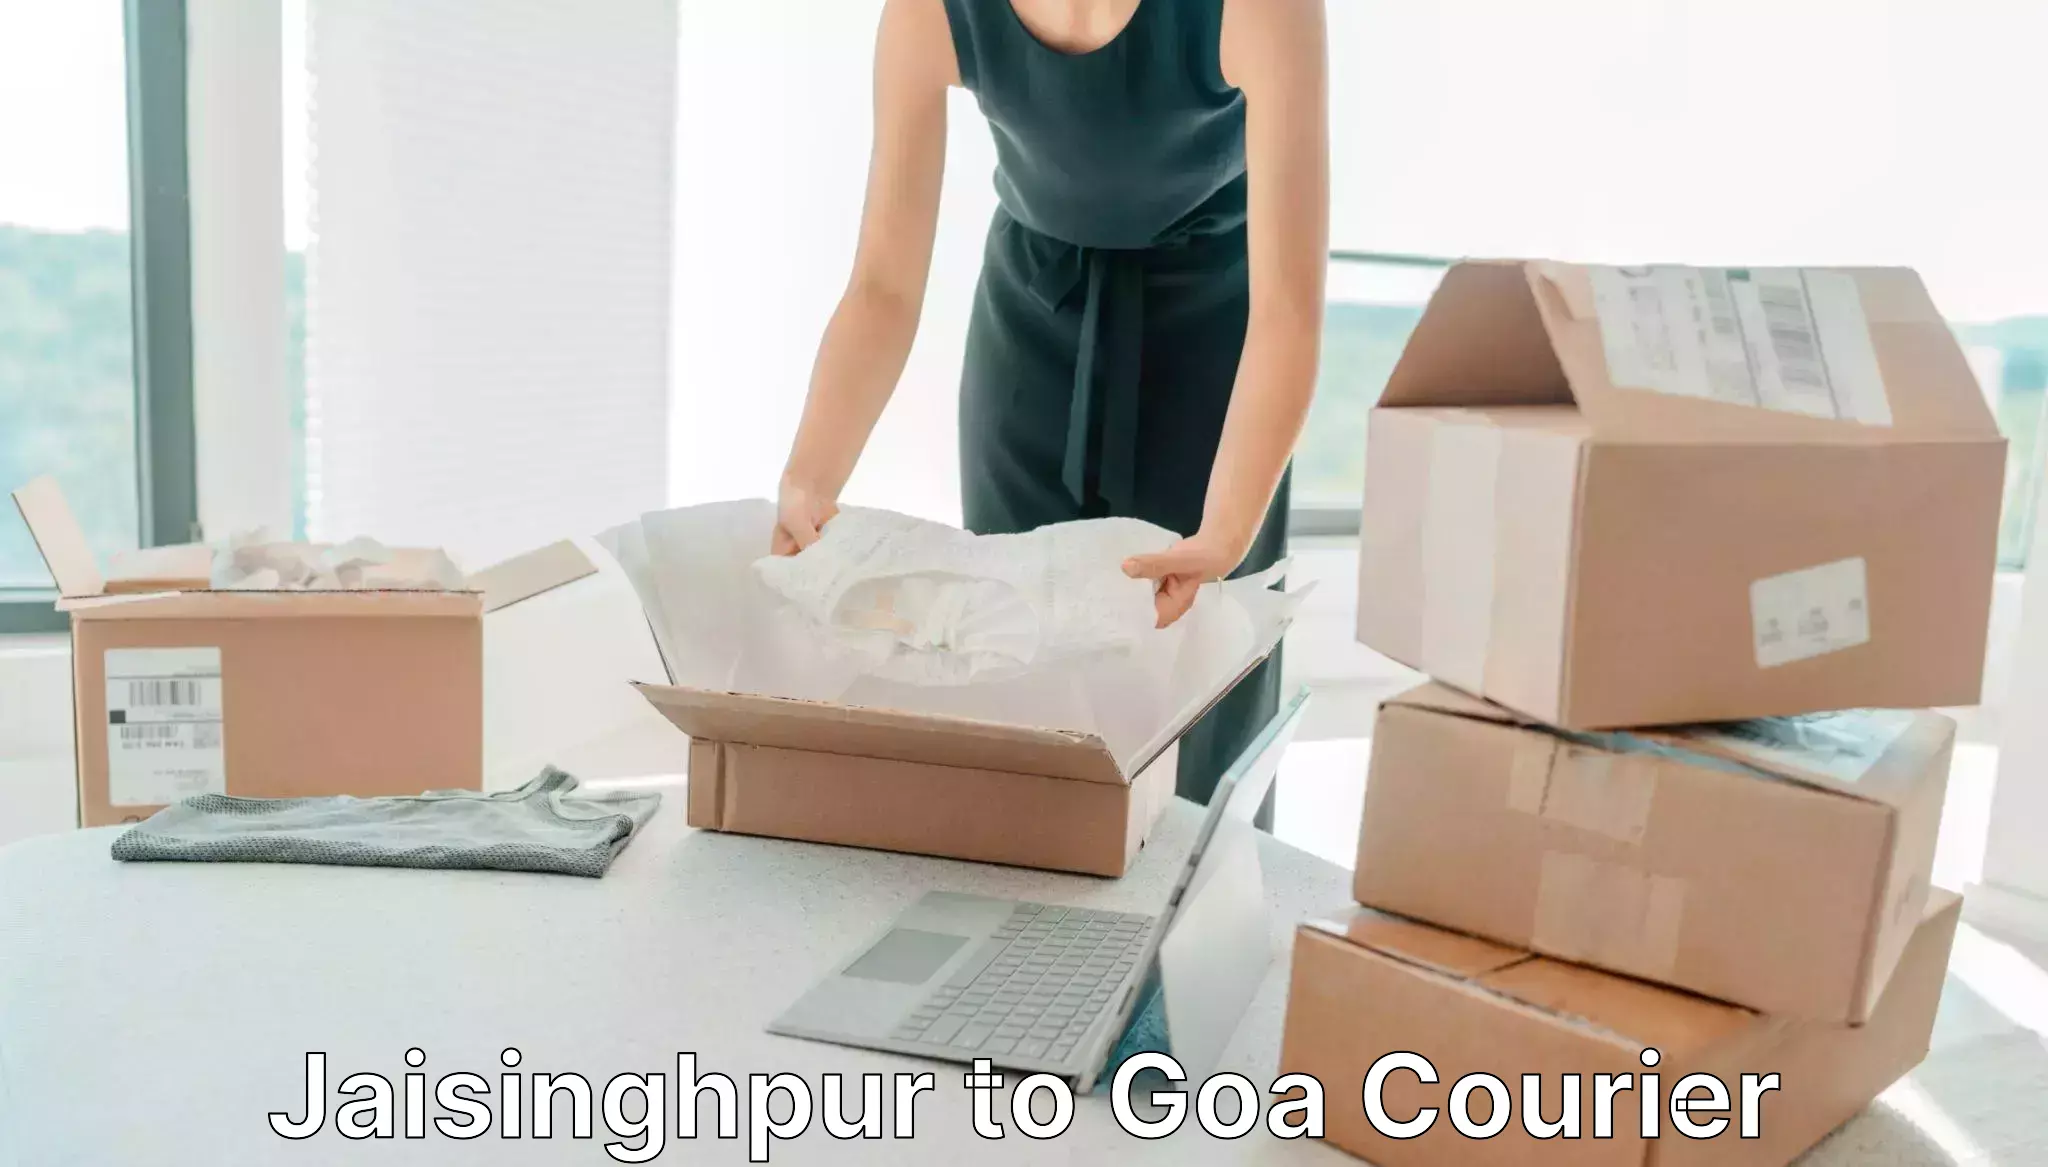 Postal and courier services Jaisinghpur to NIT Goa